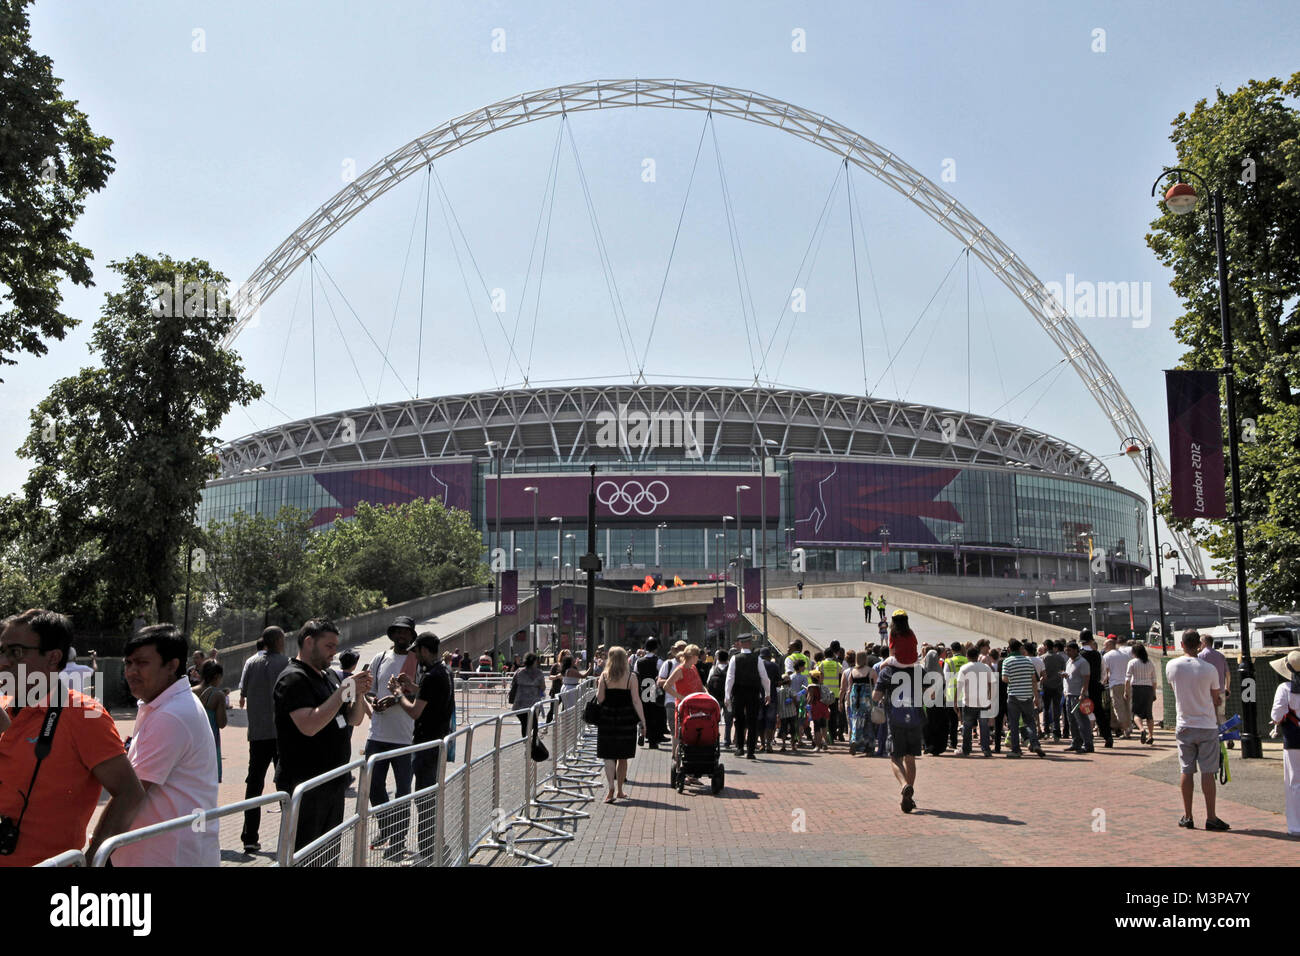 25/07/2012. Londres, R.-U. Vue générale du stade de Wembley de Wembley. Le relais de la Flamme Olympique arrive à Wembley, pour les Jeux Olympiques de 2012 au Royaume-Uni Banque D'Images